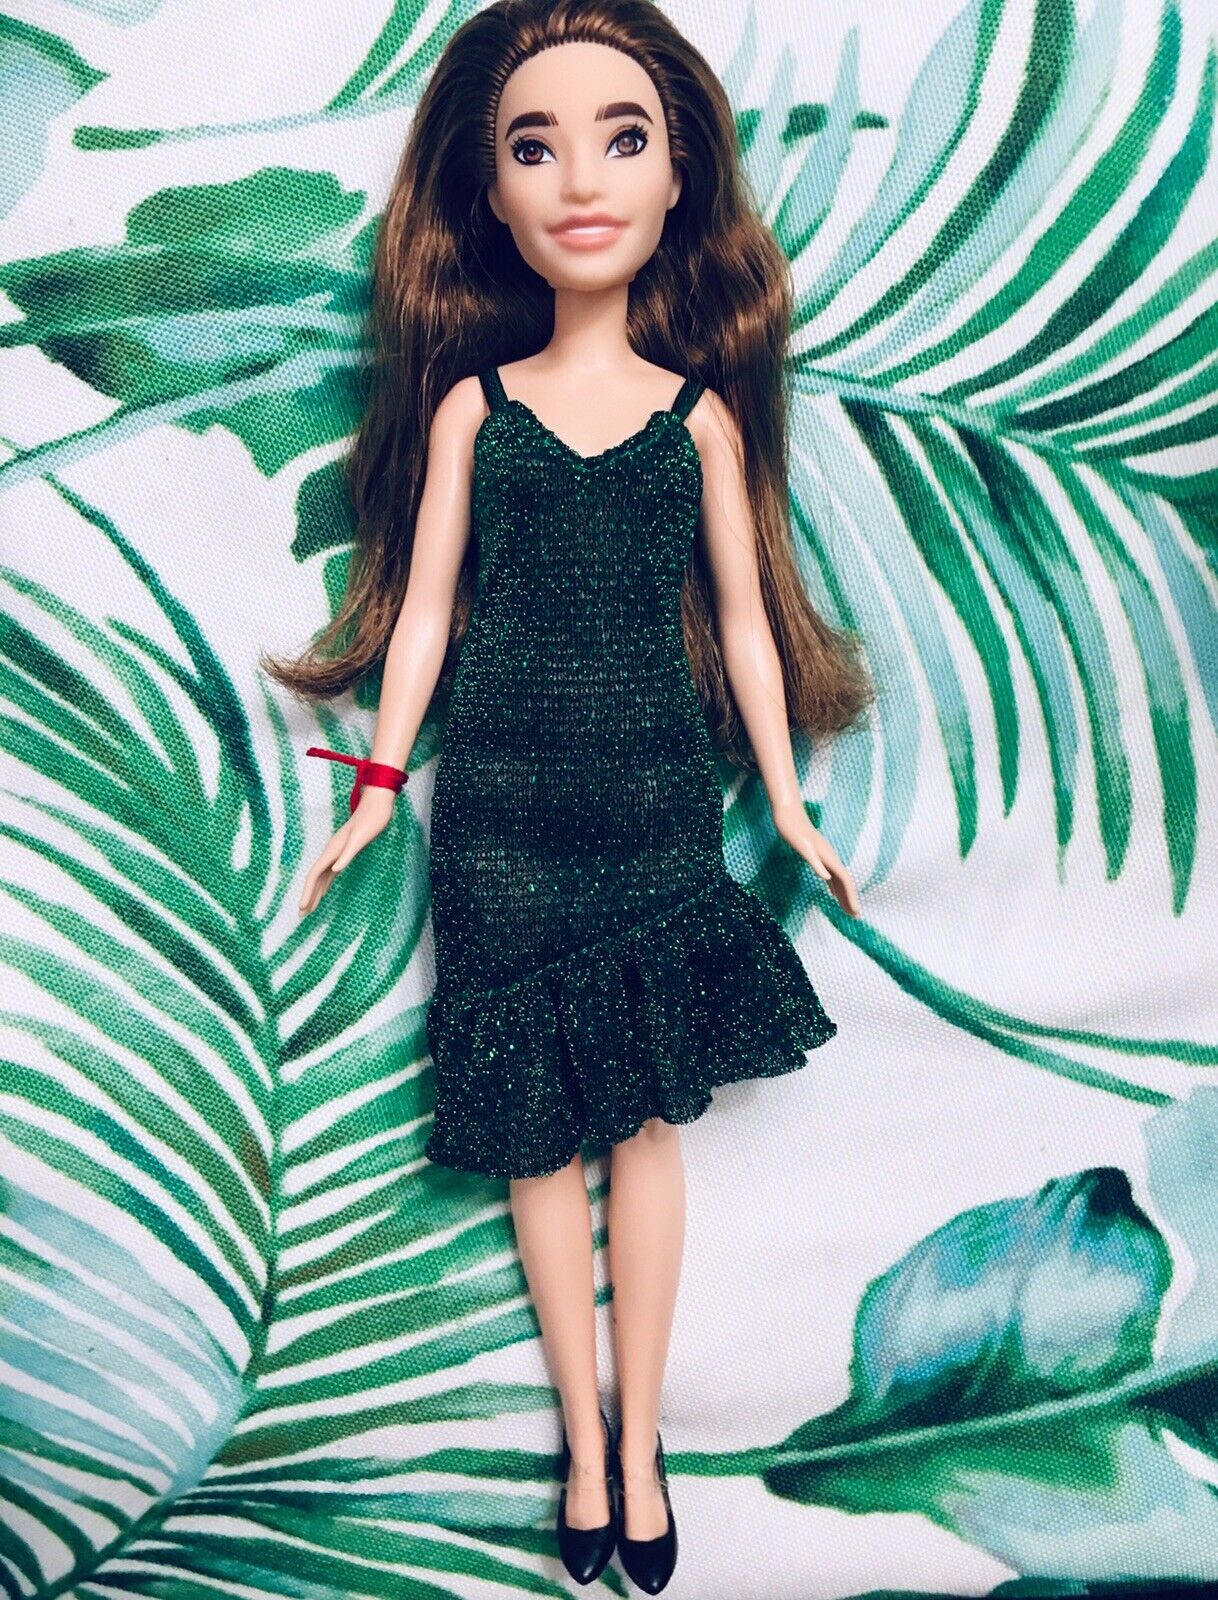 OOAK Renesmee Cullen Barbie Doll Party Twilight Breaking Dawn